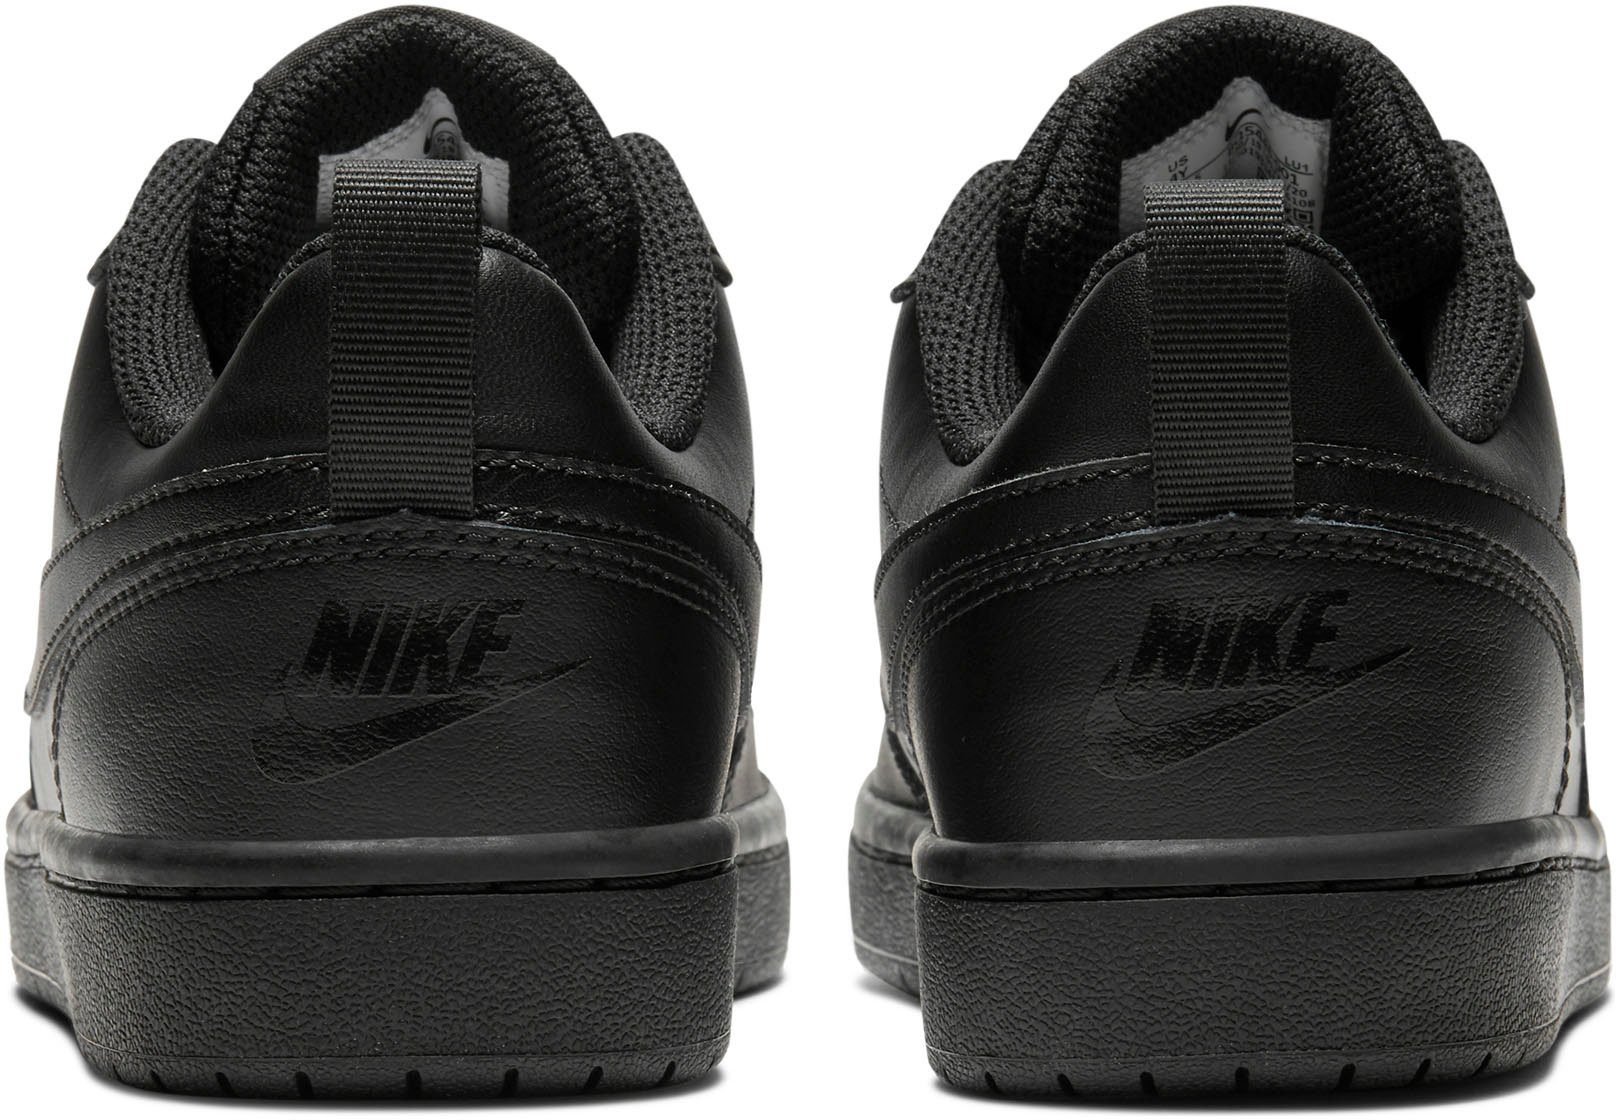 Court des schwarz Spuren Sneaker Force Nike den Borough auf Air Design 1 Sportswear